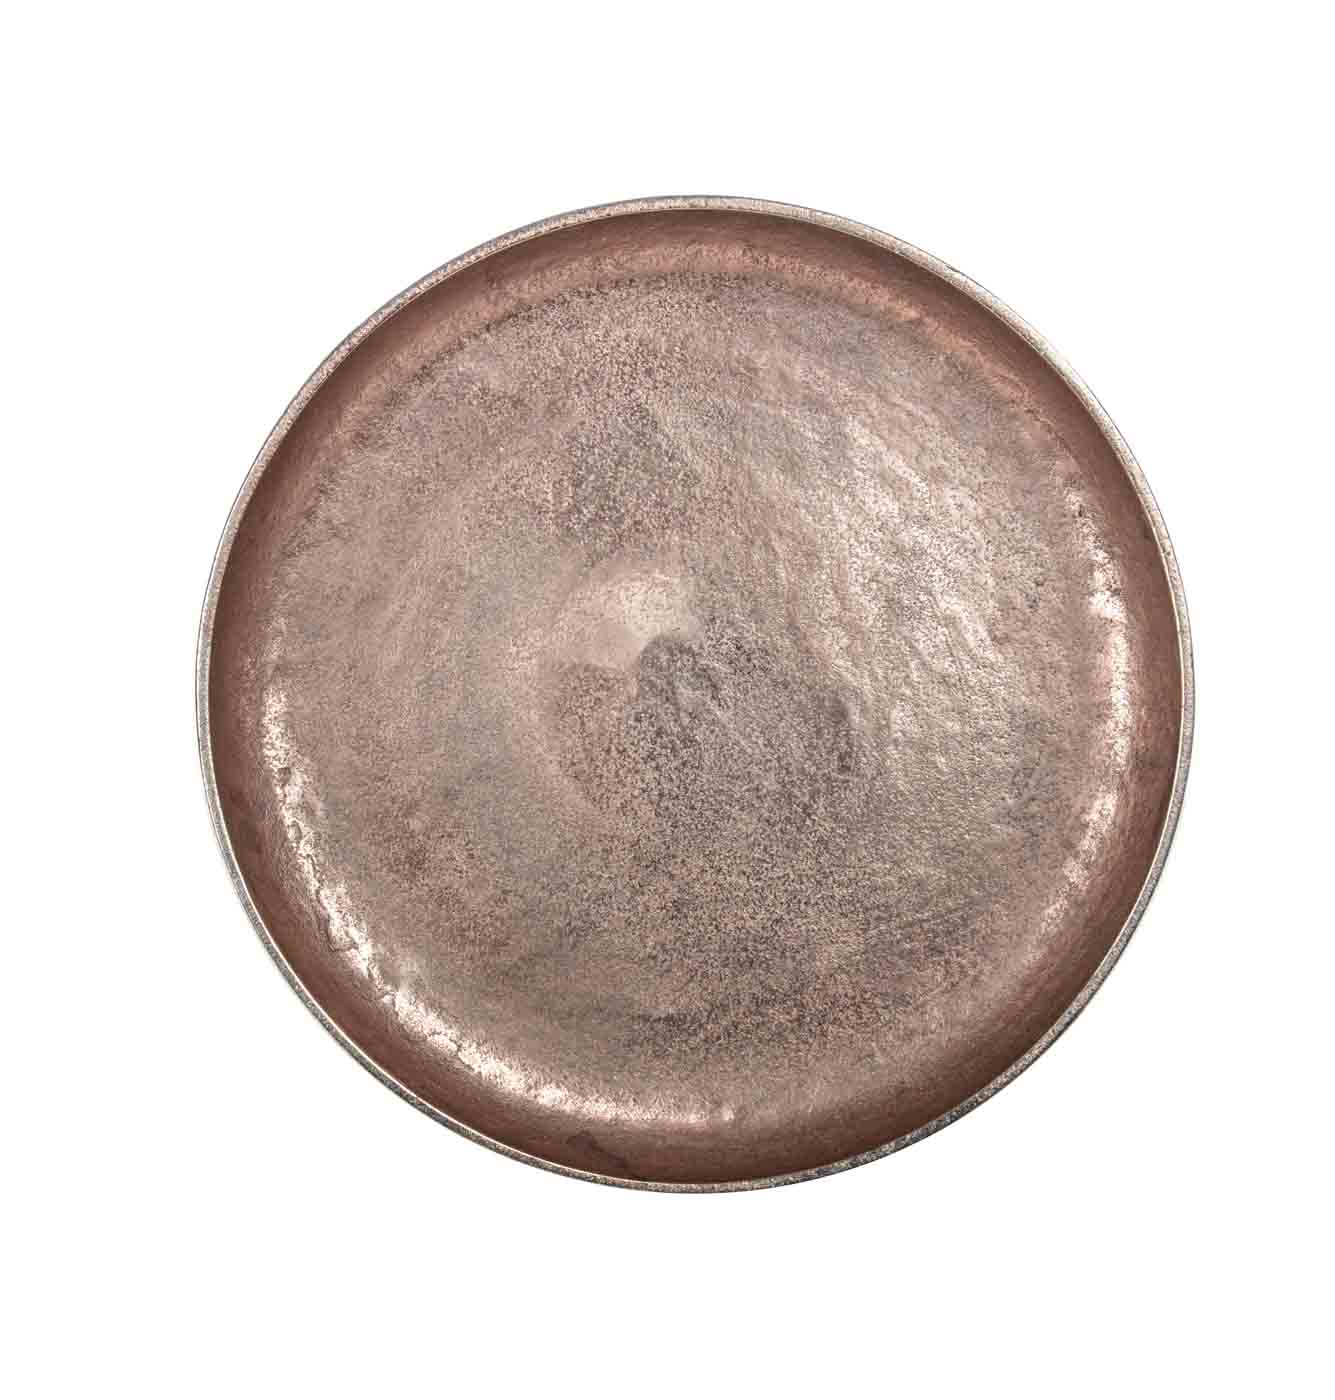 Der runde Beistelltisch Tahir wurde aus Aluminium gefertigt. Die Oberfläche ist in einem Bronze-Farbton und das Gestell ist schwarz.